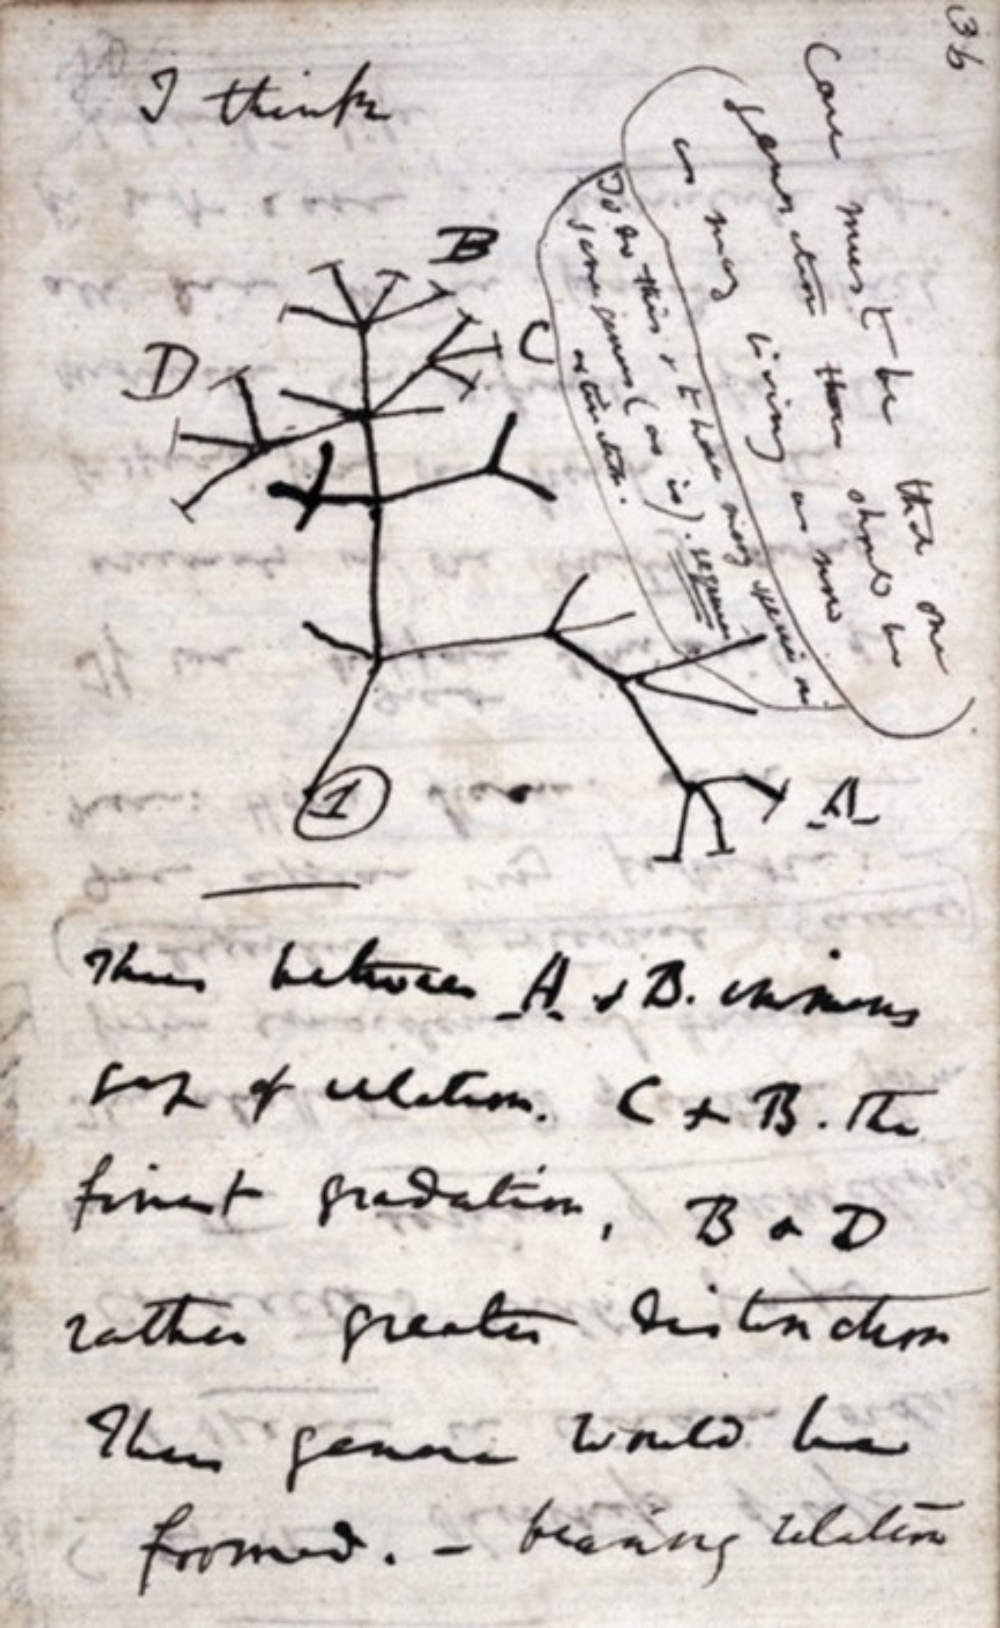 Dibuix de Charles Darwin, amb les seves anotacions. Wikimedia Commons